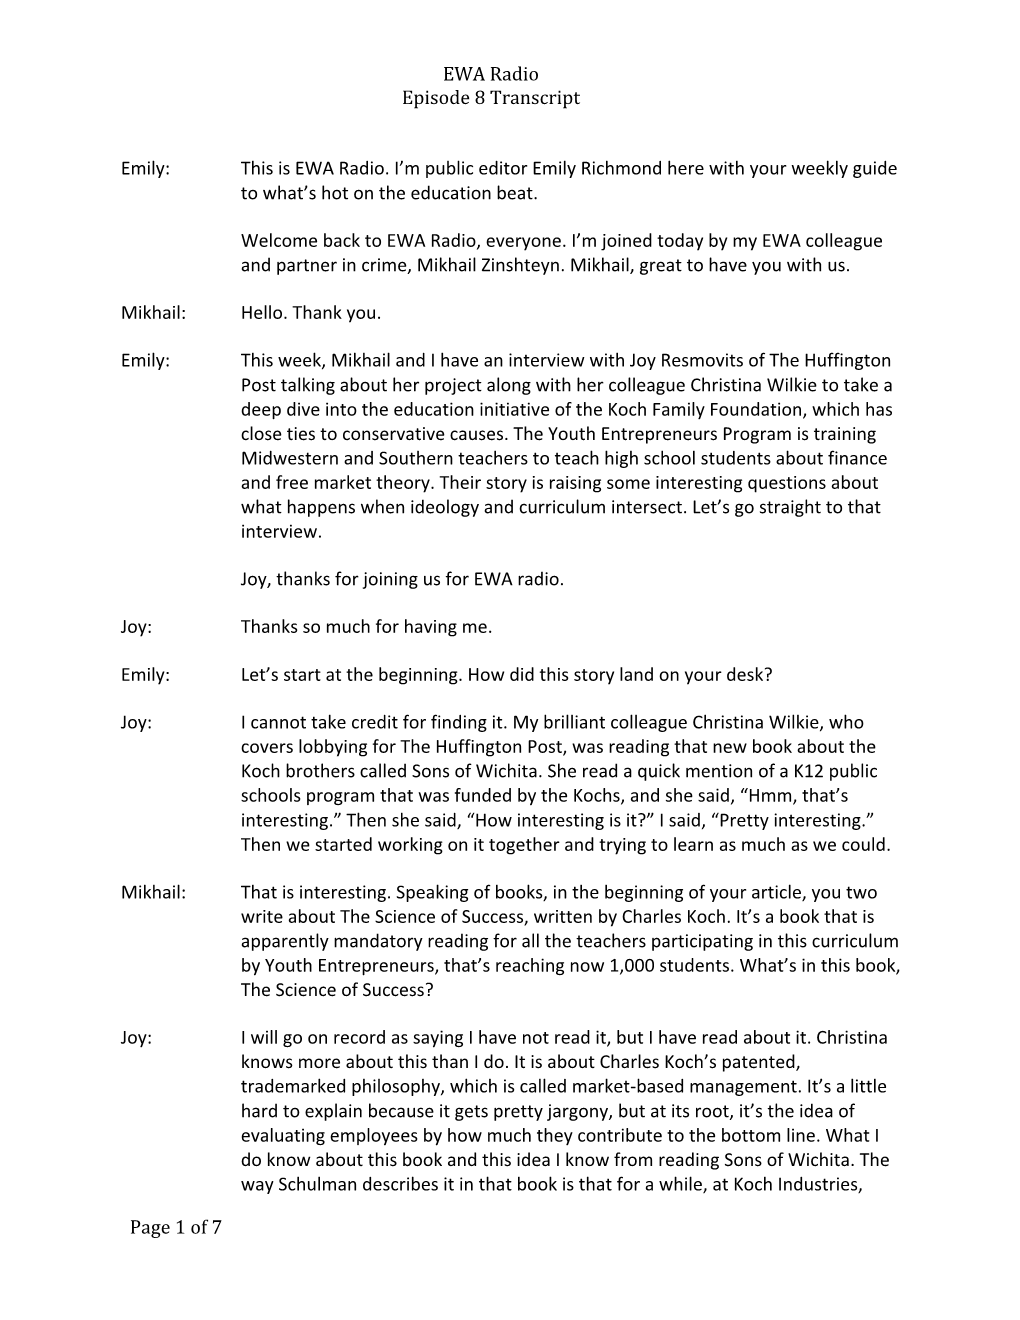 EWA Radio Episode 8 Transcript Page 1 of 7 Emily: This Is EWA Radio